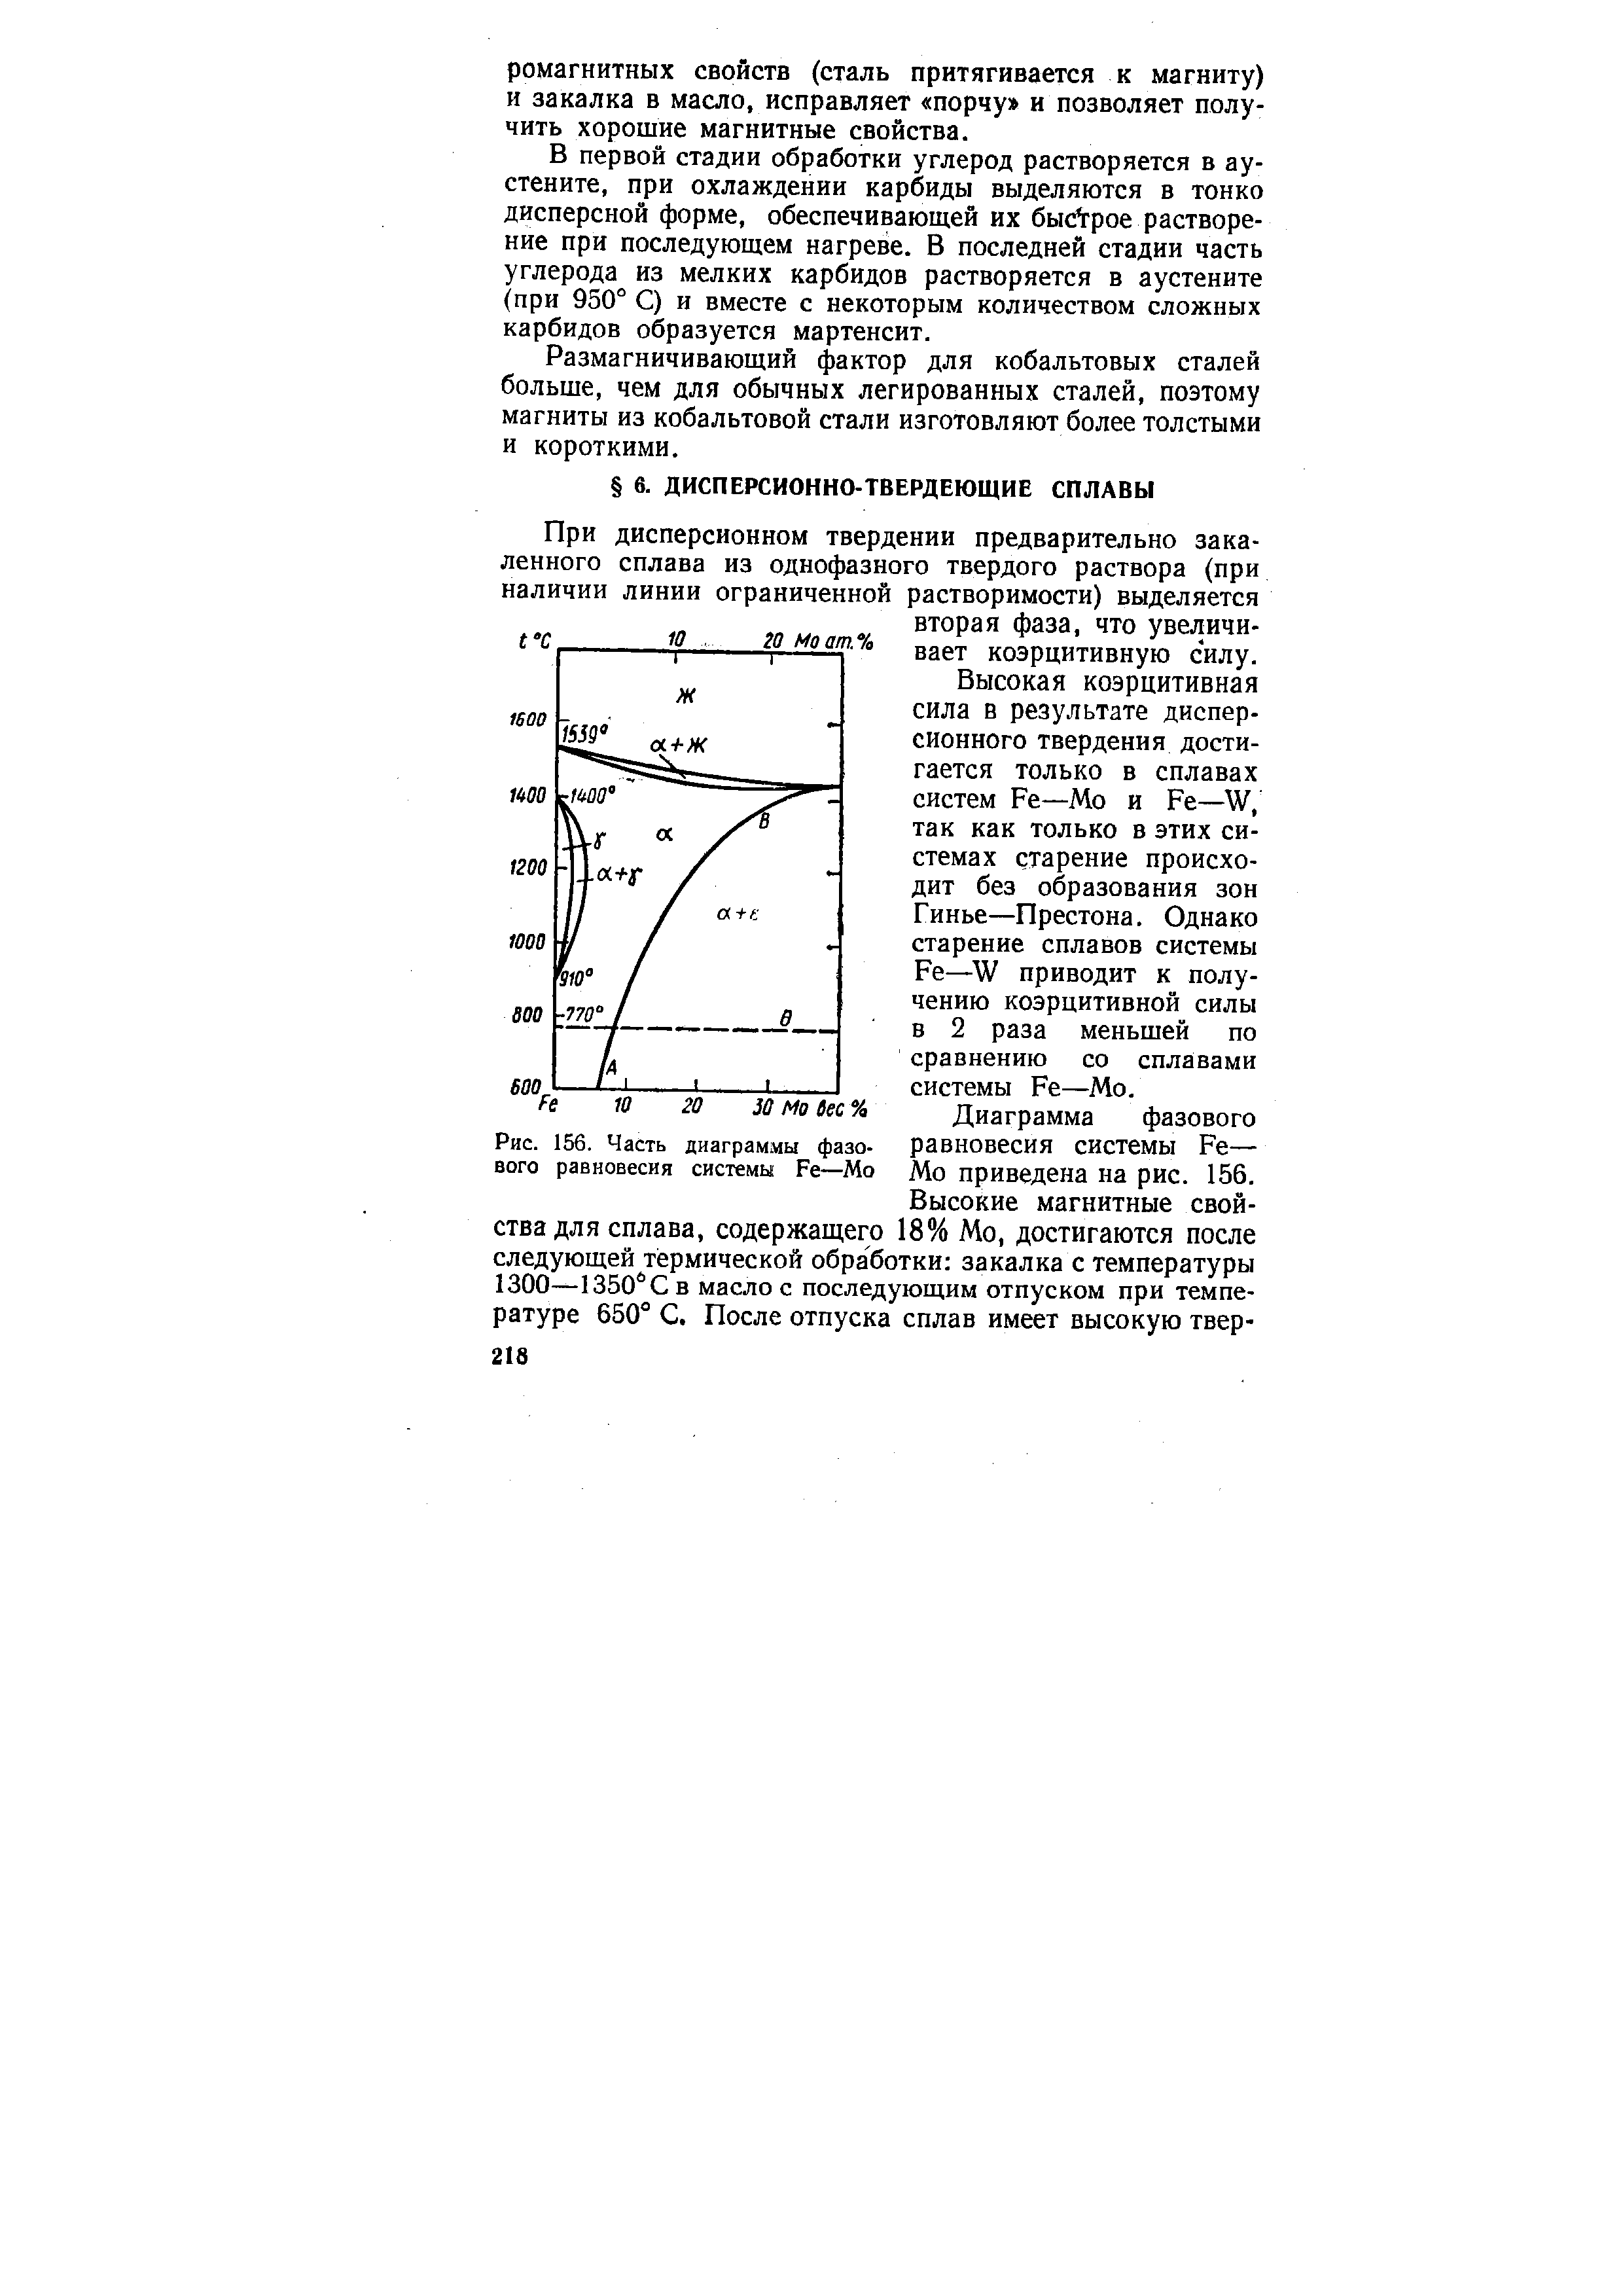 Рис. 156. Часть диаграммы фазового равновесия системы Fe—Мо
